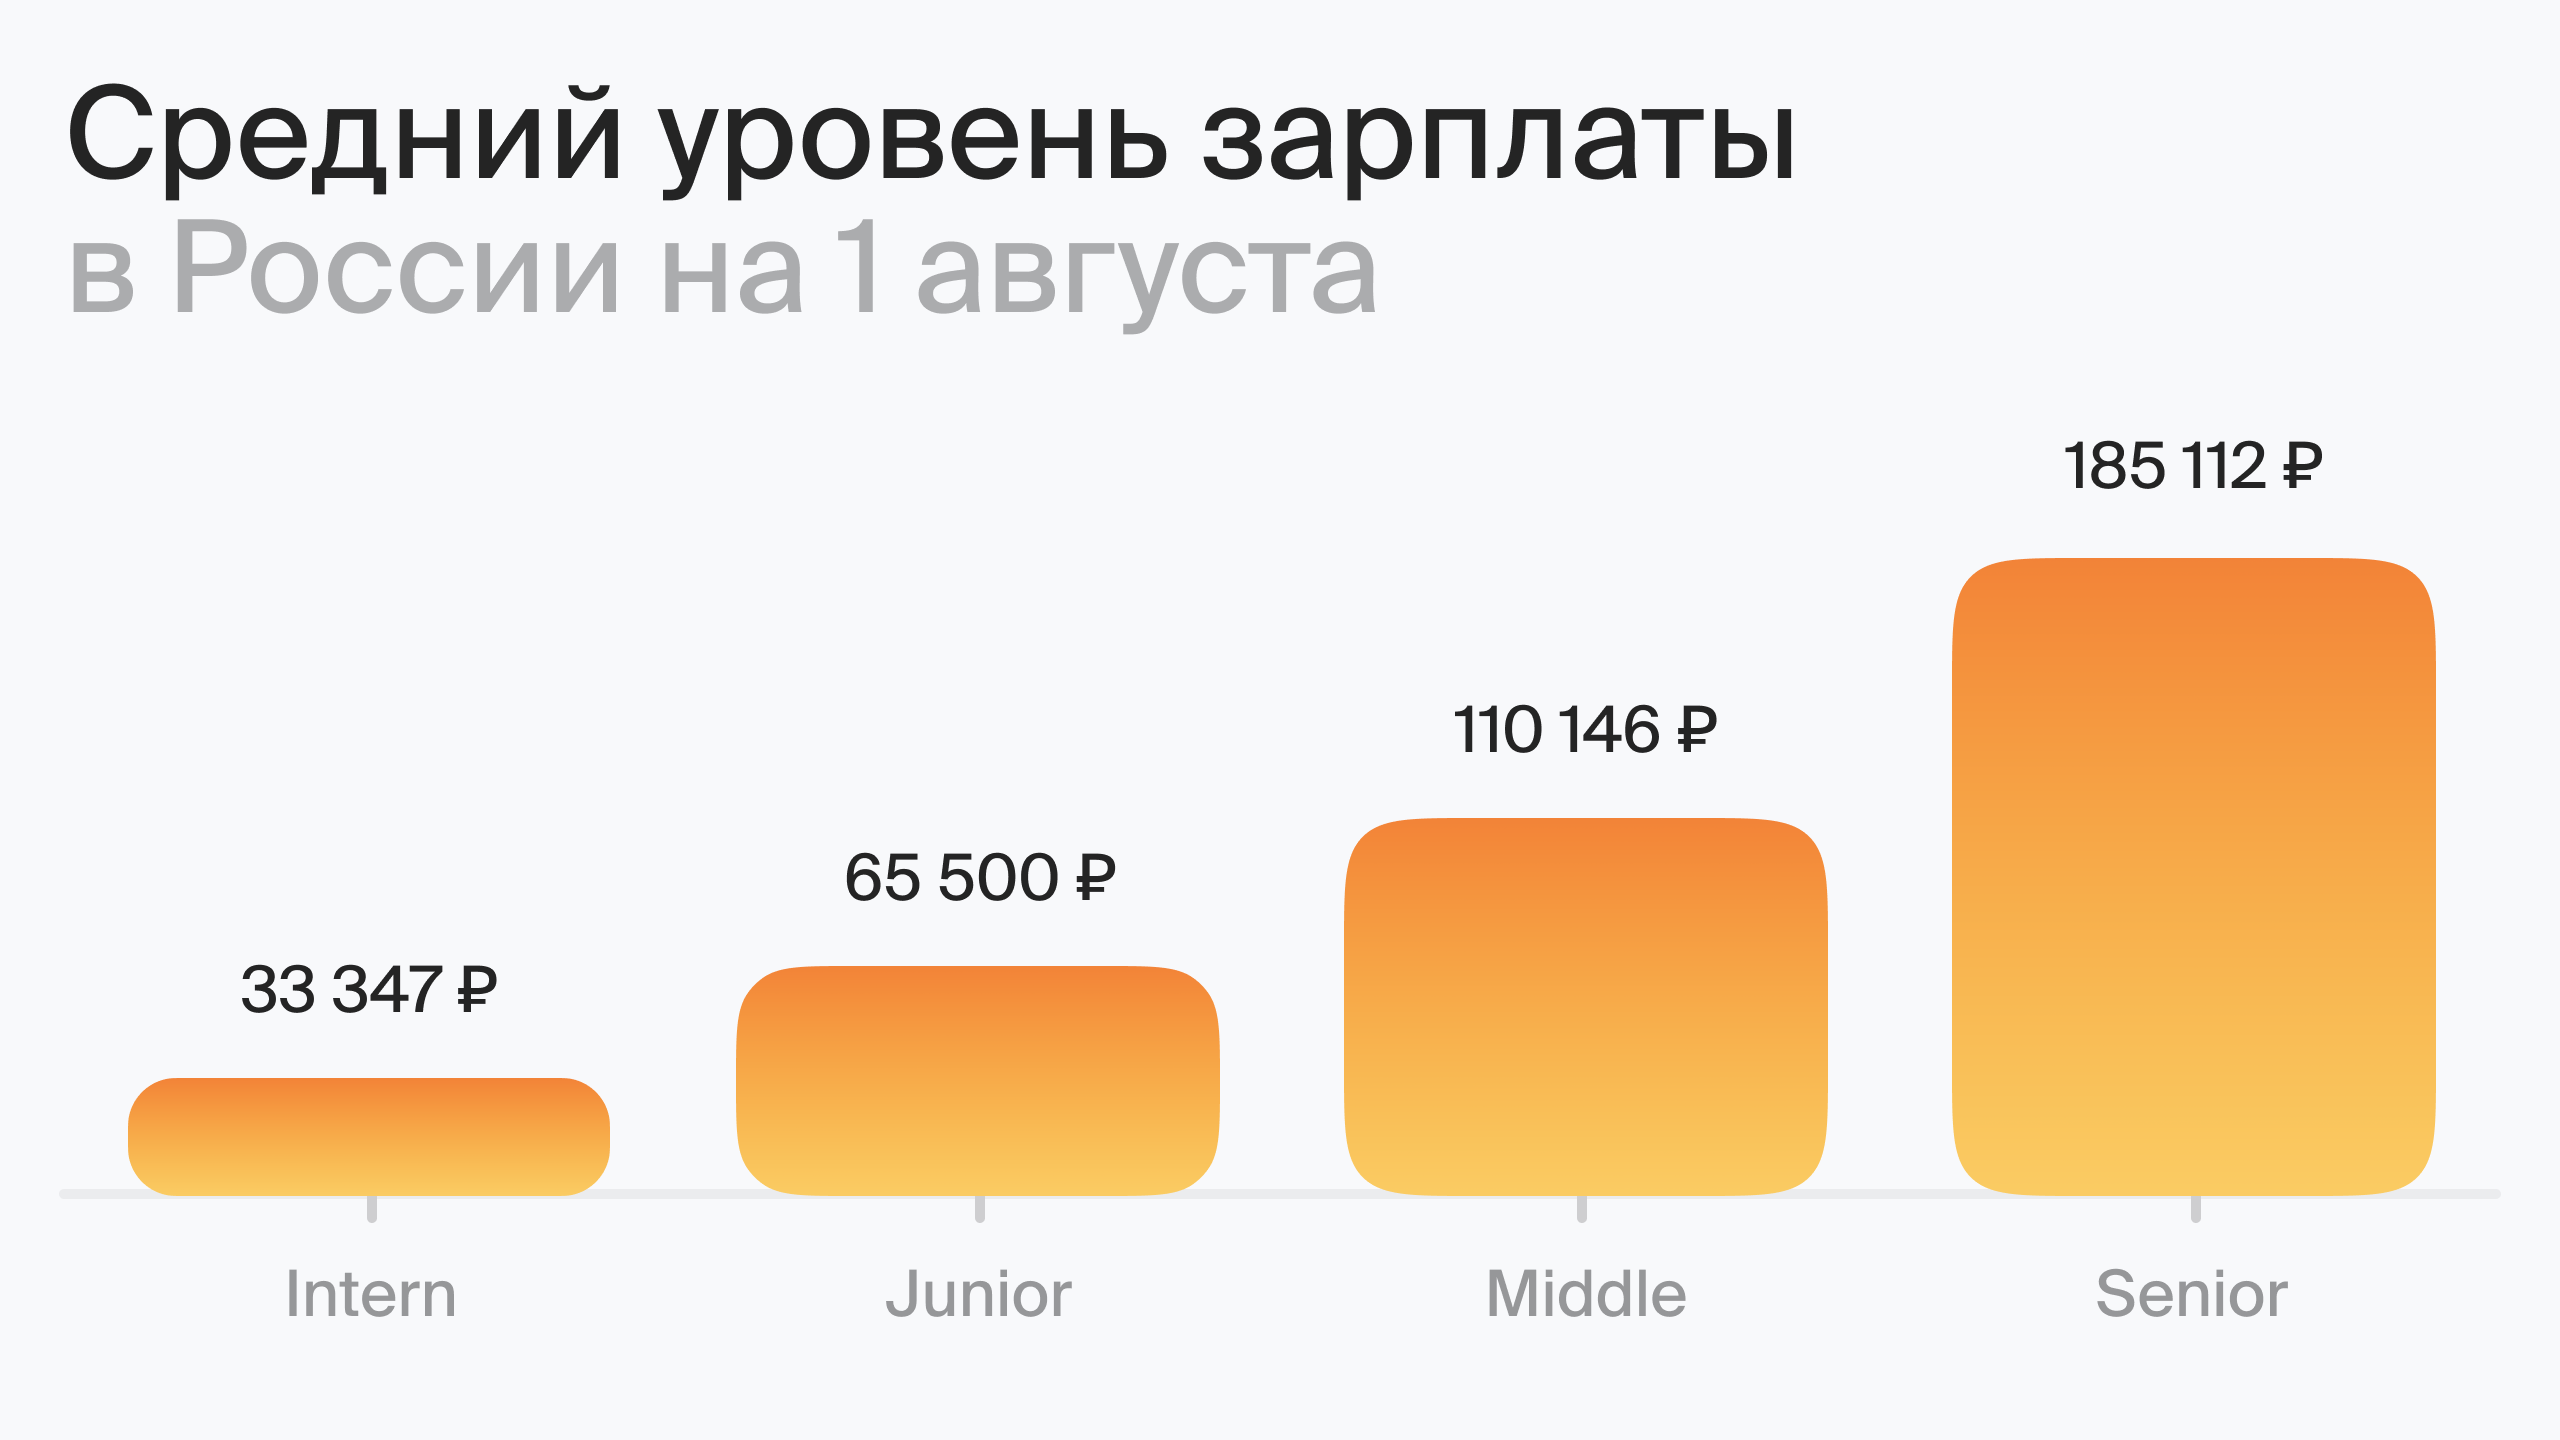 Средний уровень зарплаты в России на 1 августа (по данным Хабр Карьера)